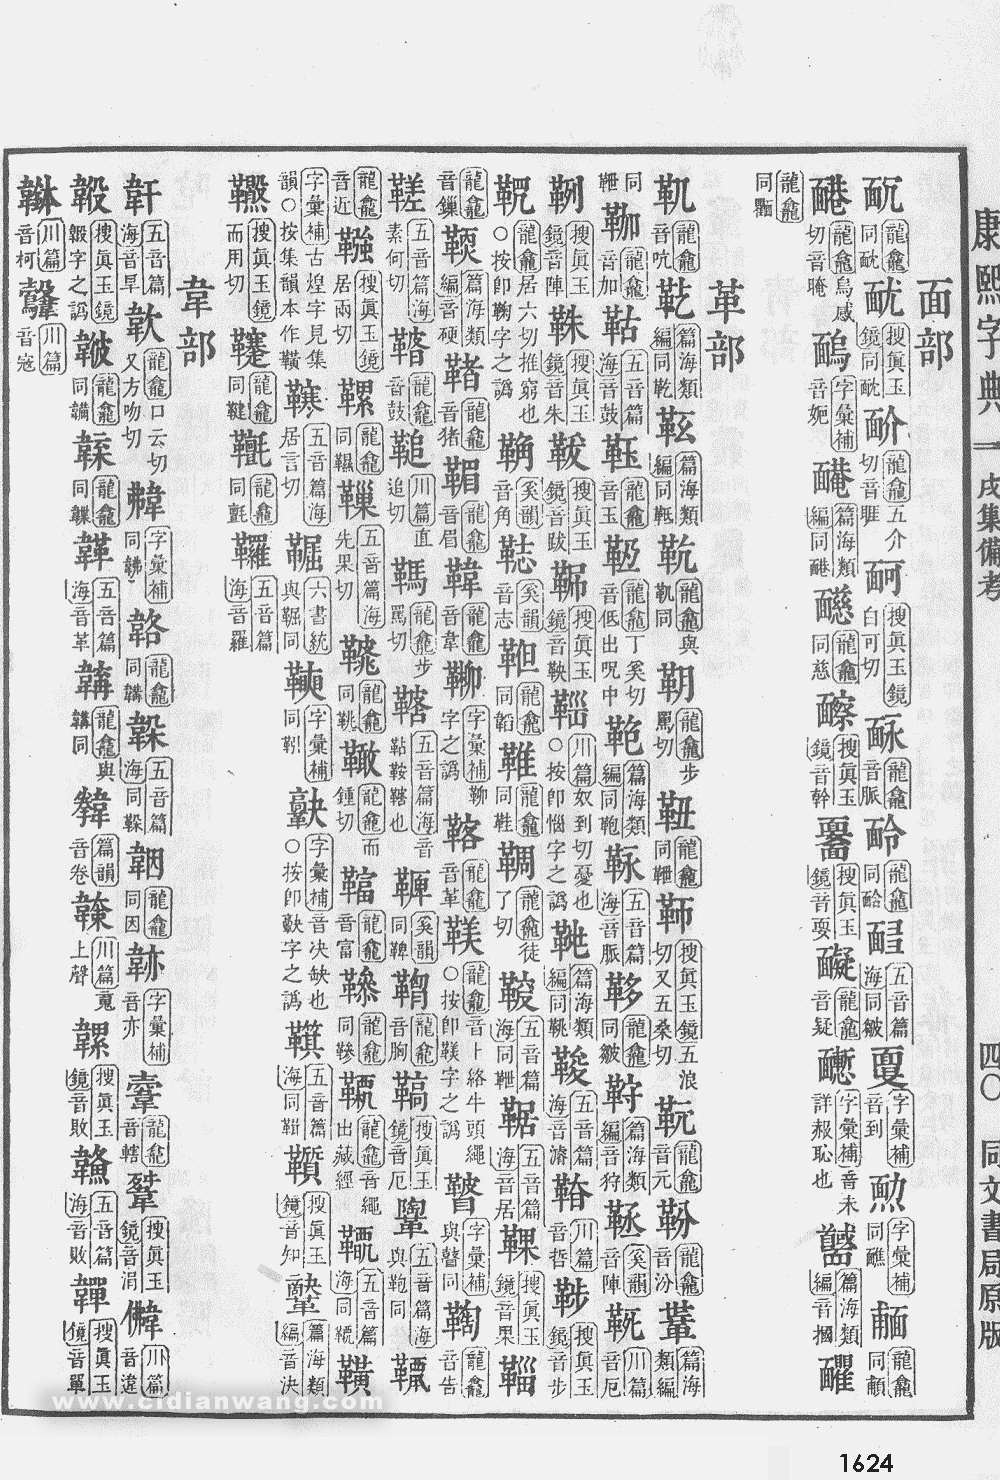 康熙字典掃描版第1624頁